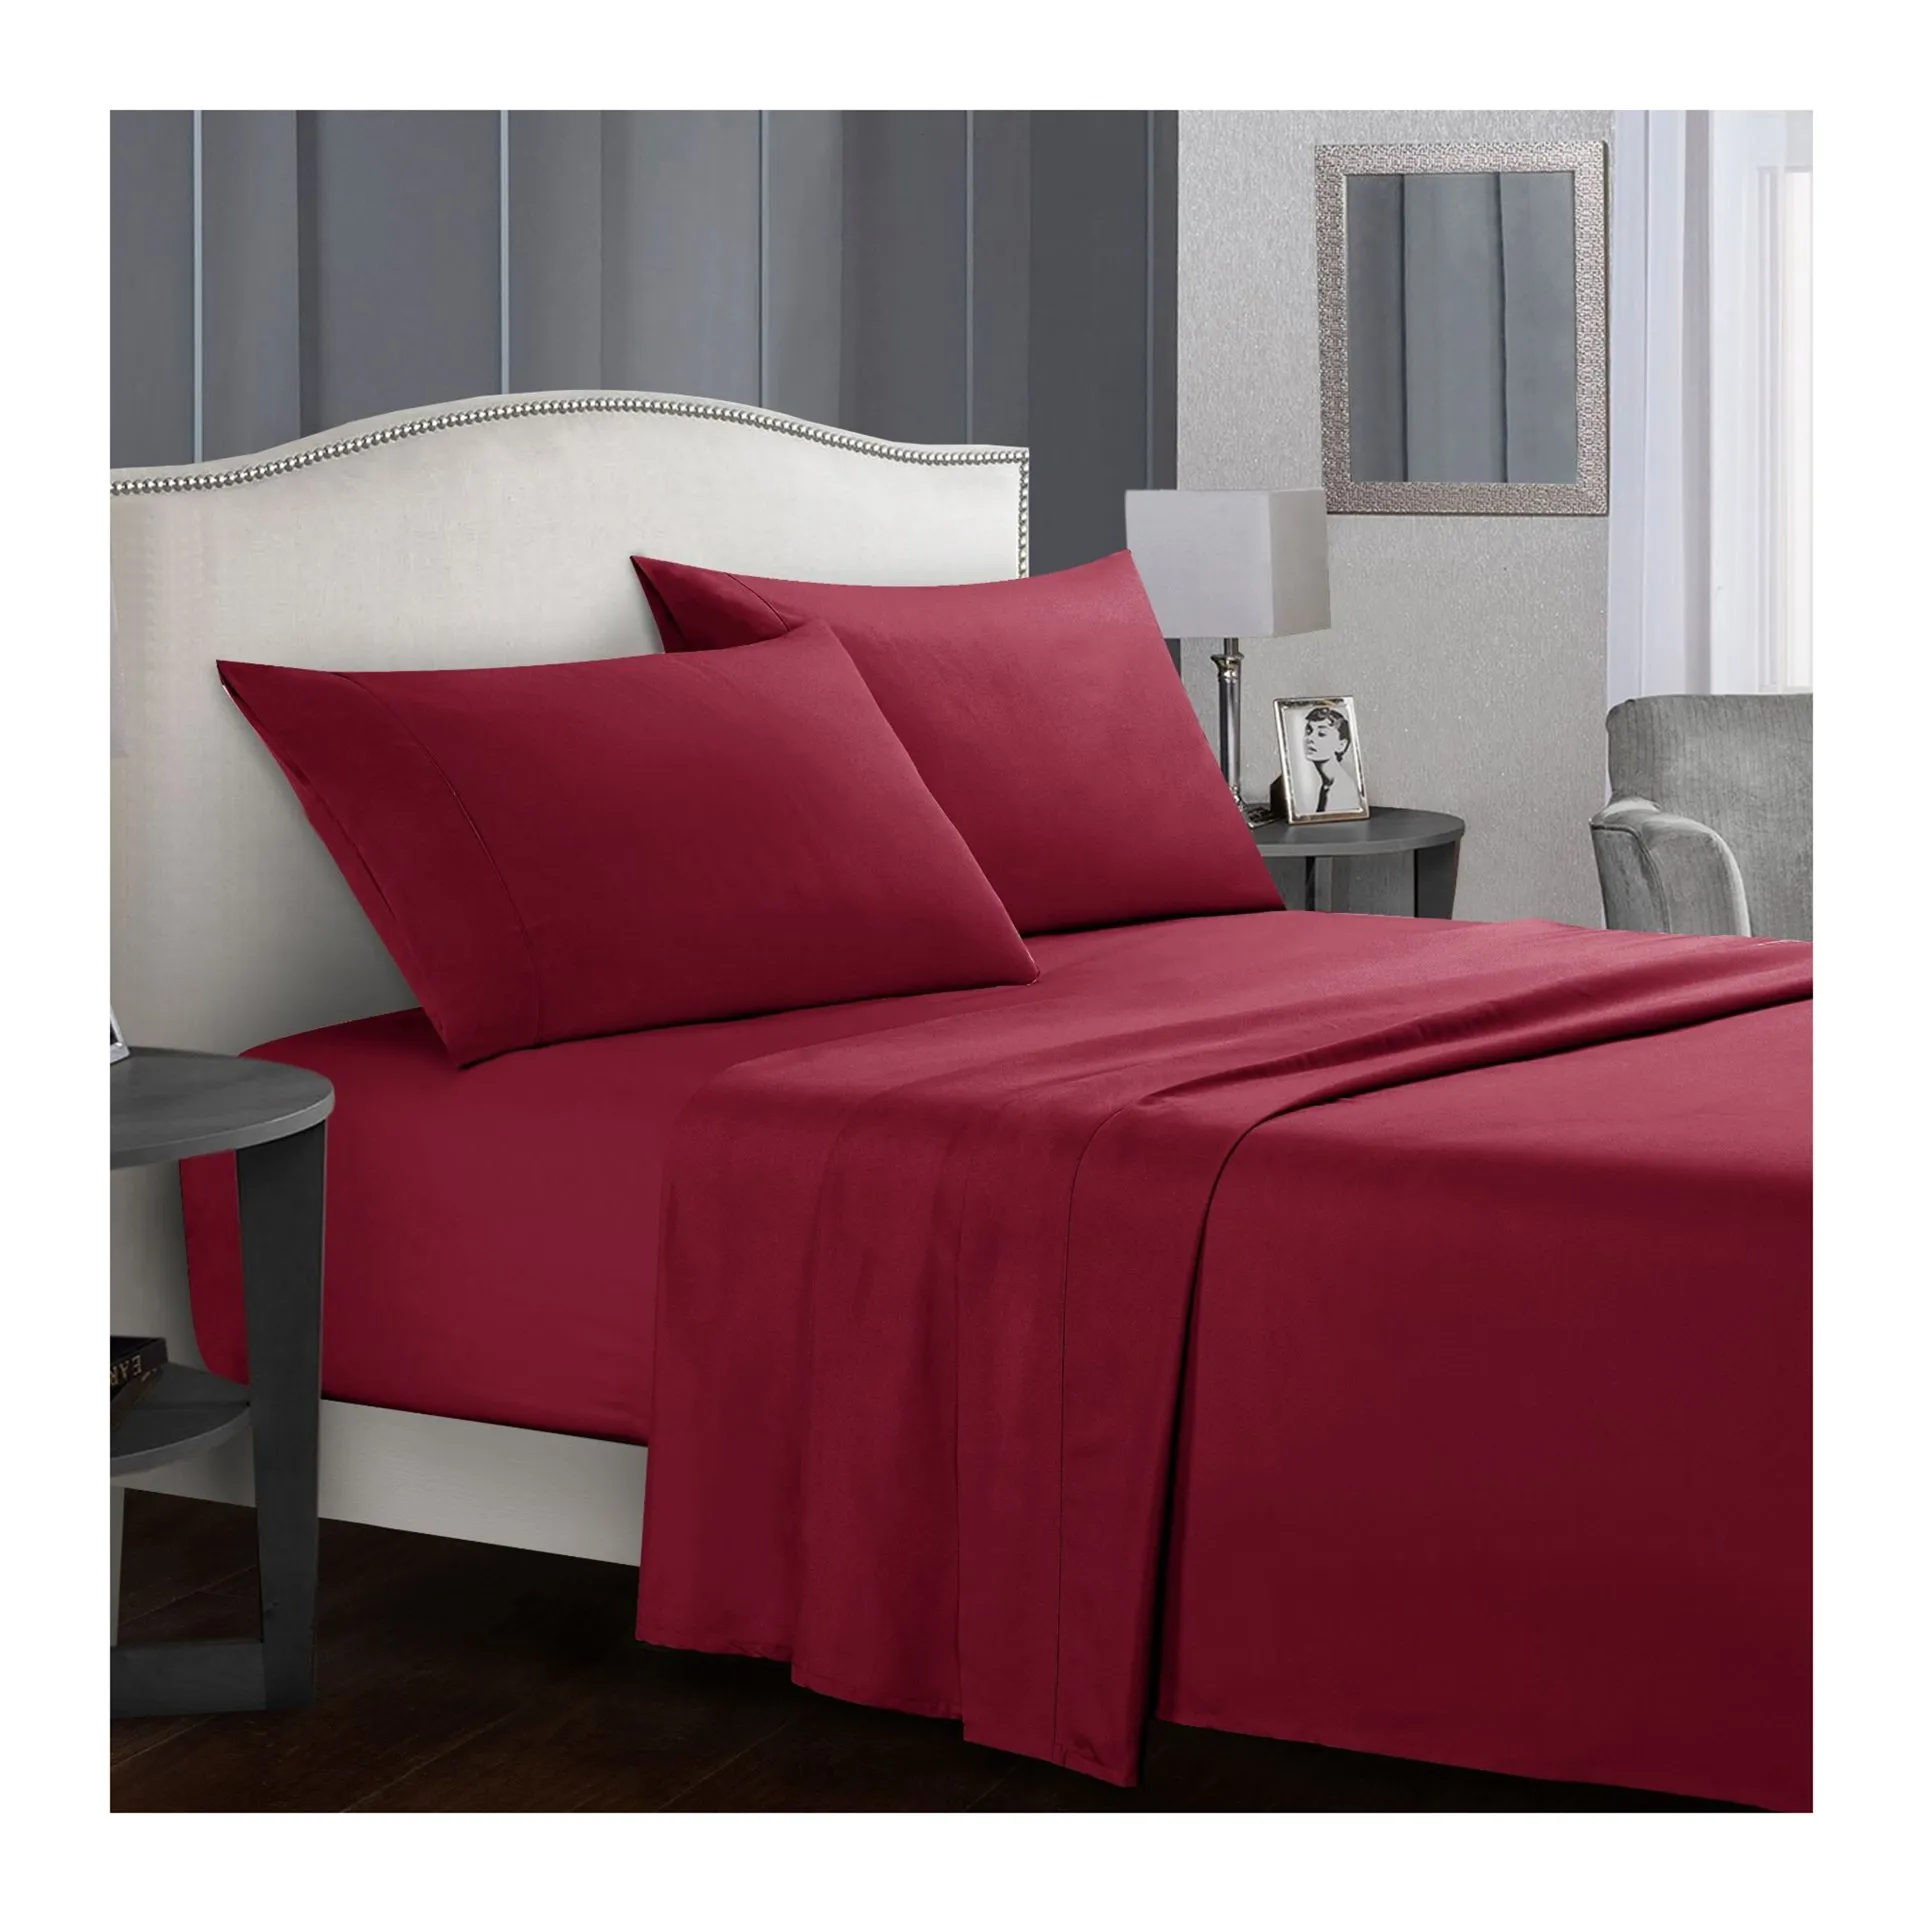 Parure de lit blanche de luxe king size avec logo couleur taille cal personnalisée en usine drap de lit en coton avec taies d'oreiller drap de lit